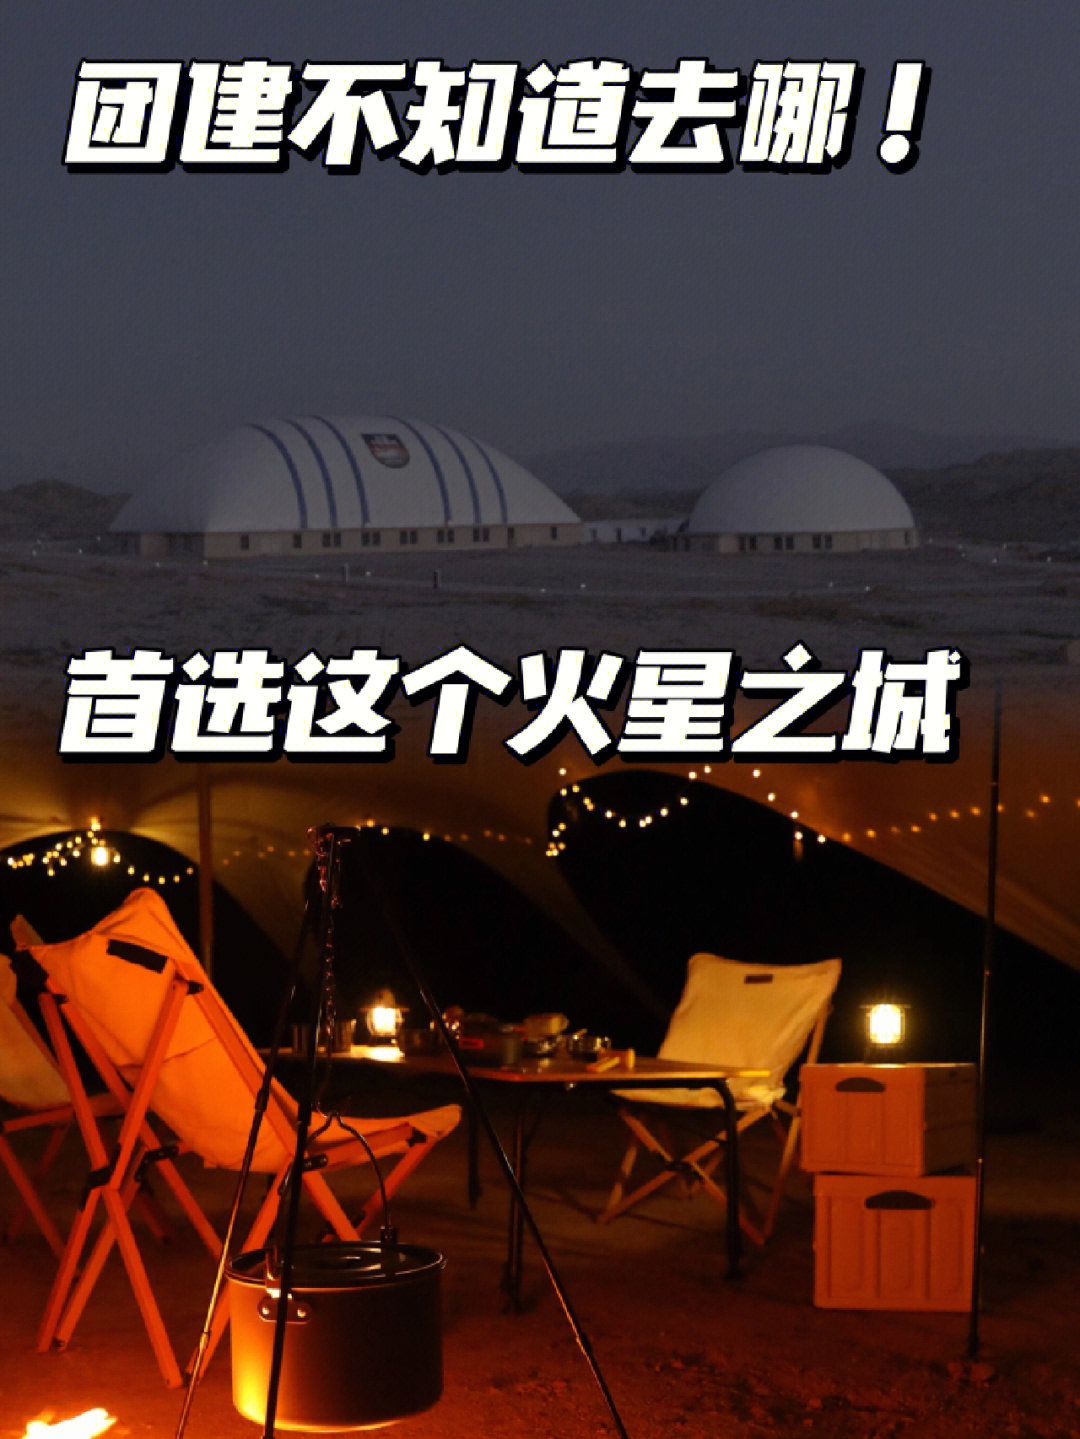 但是去火星基地这个十一假期就可以实现,位于甘肃省金昌市的火星1号